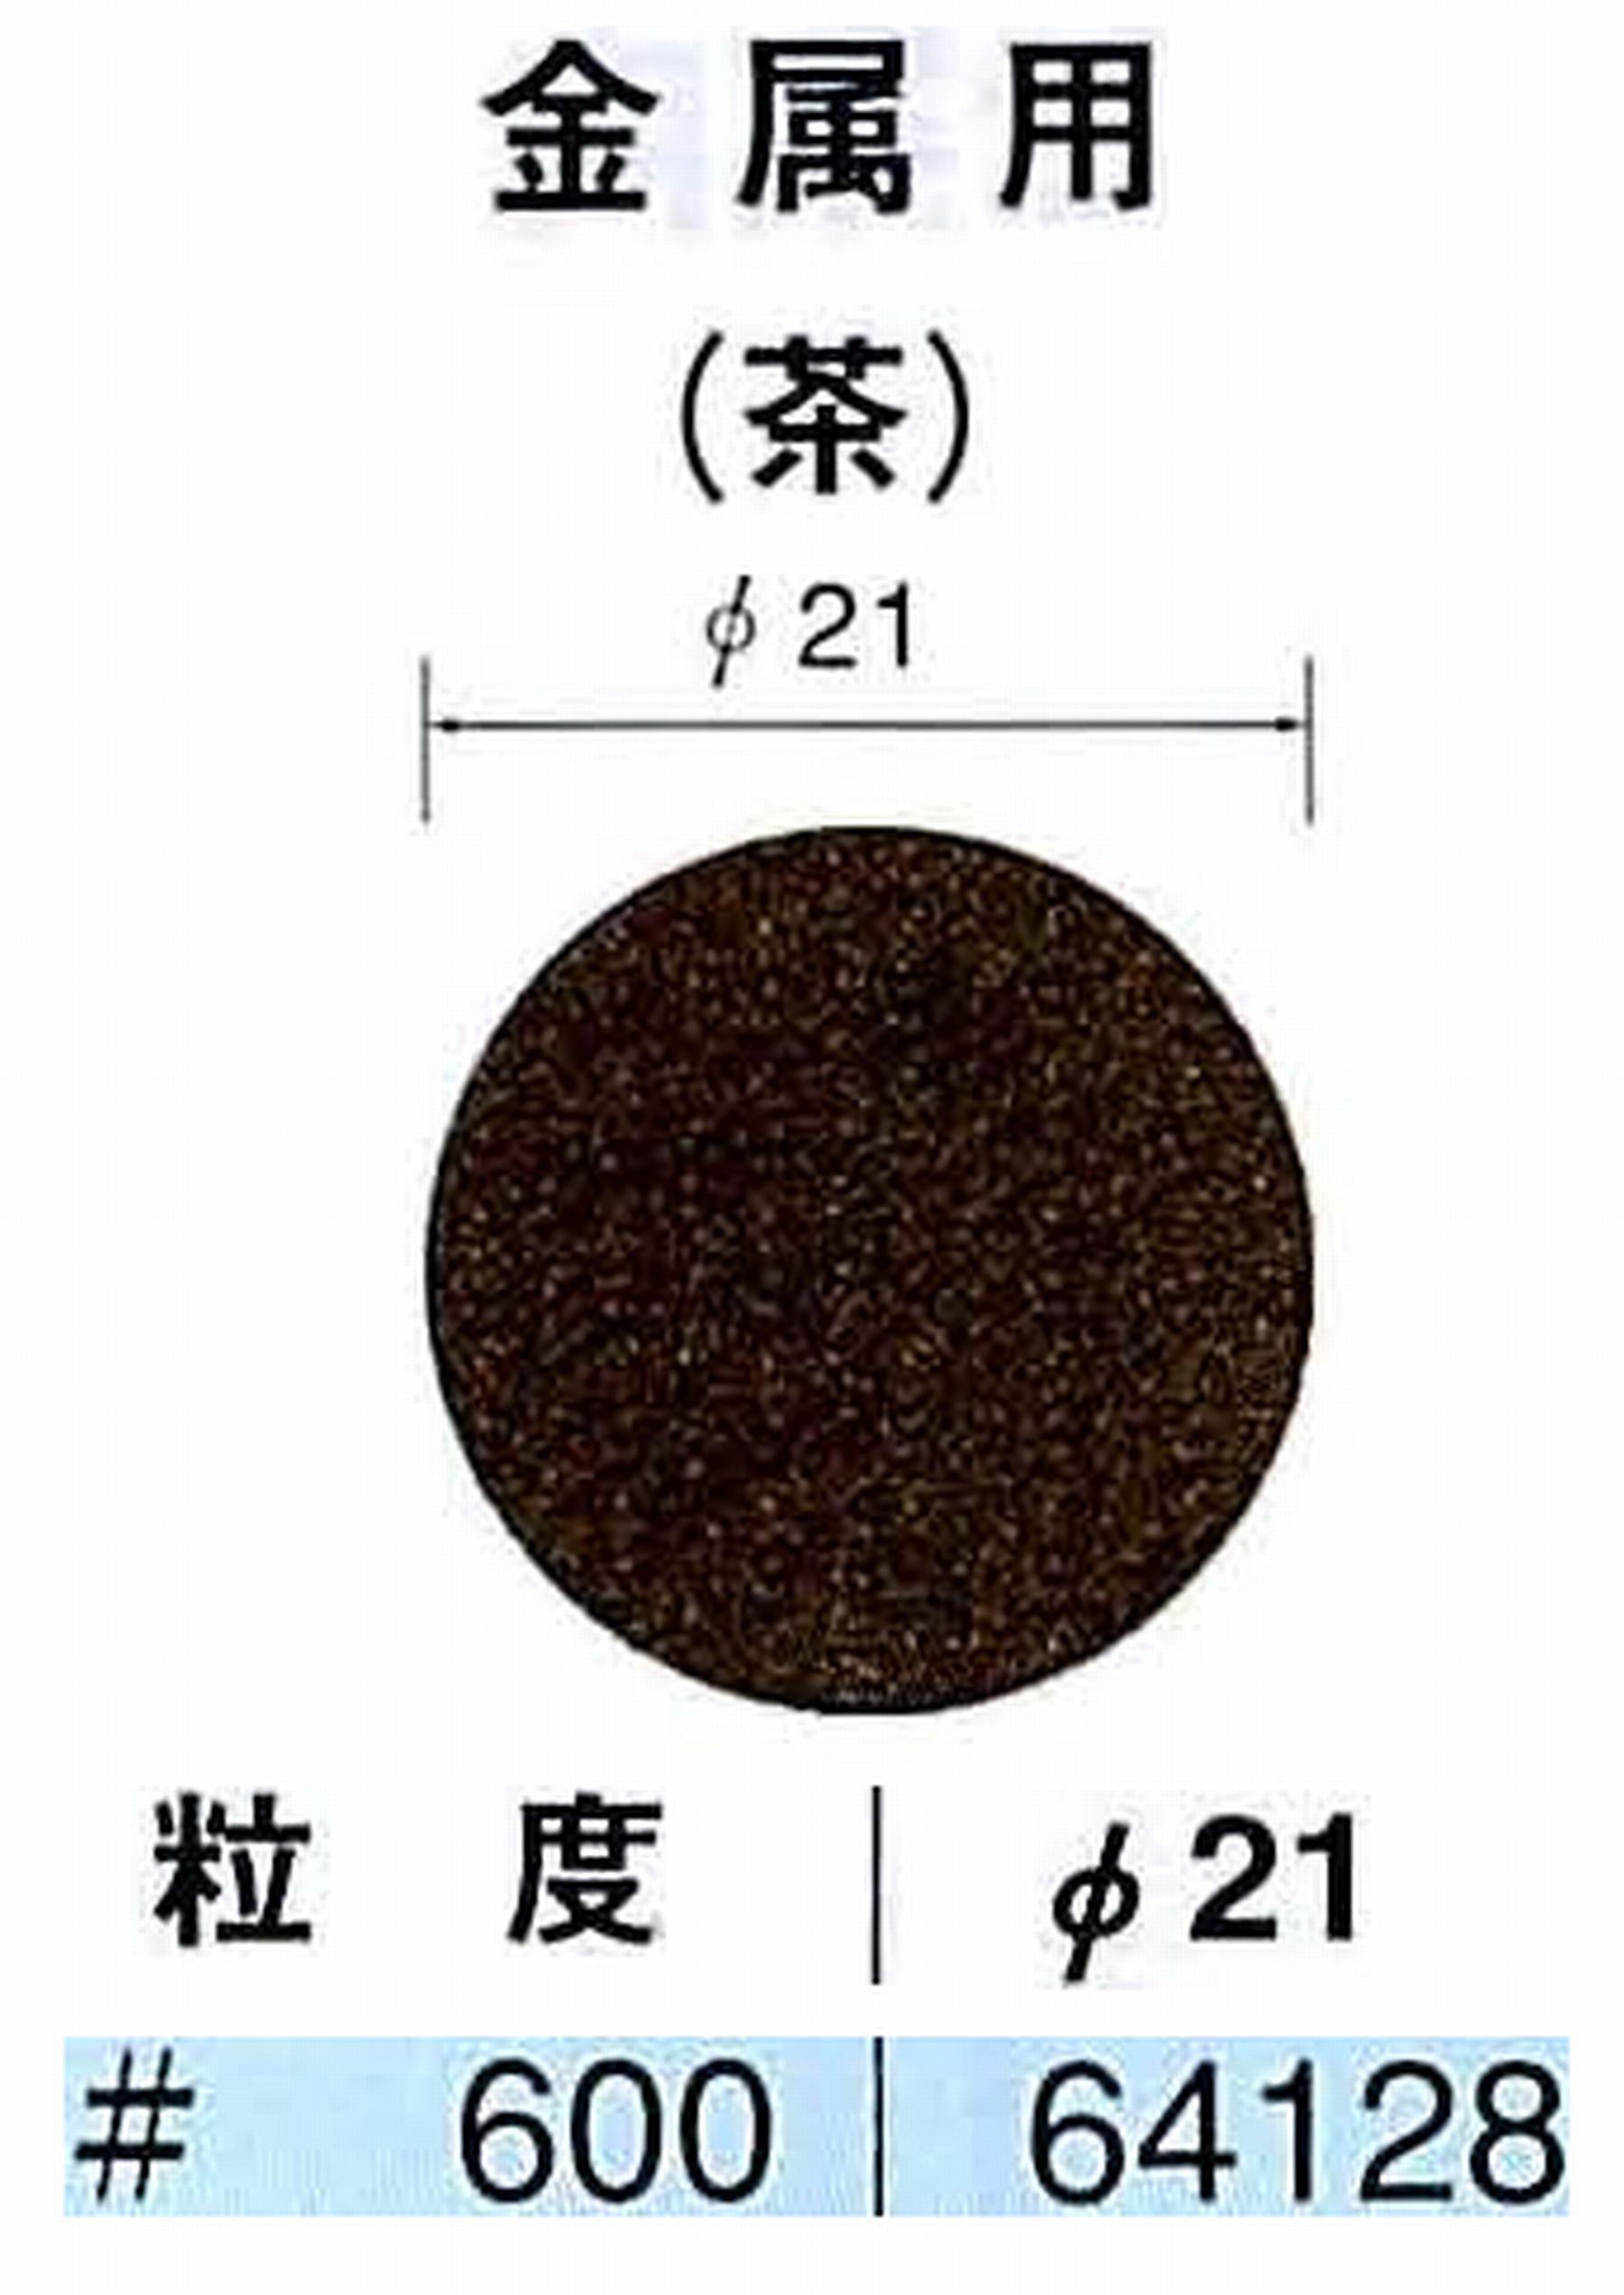 ナカニシ/NAKANISHI アングルグラインダ(電動・エアー) アングルアタッチメント専用工具 サンドペーパーディスク(布基材タイプ)裏面のり処理 64128